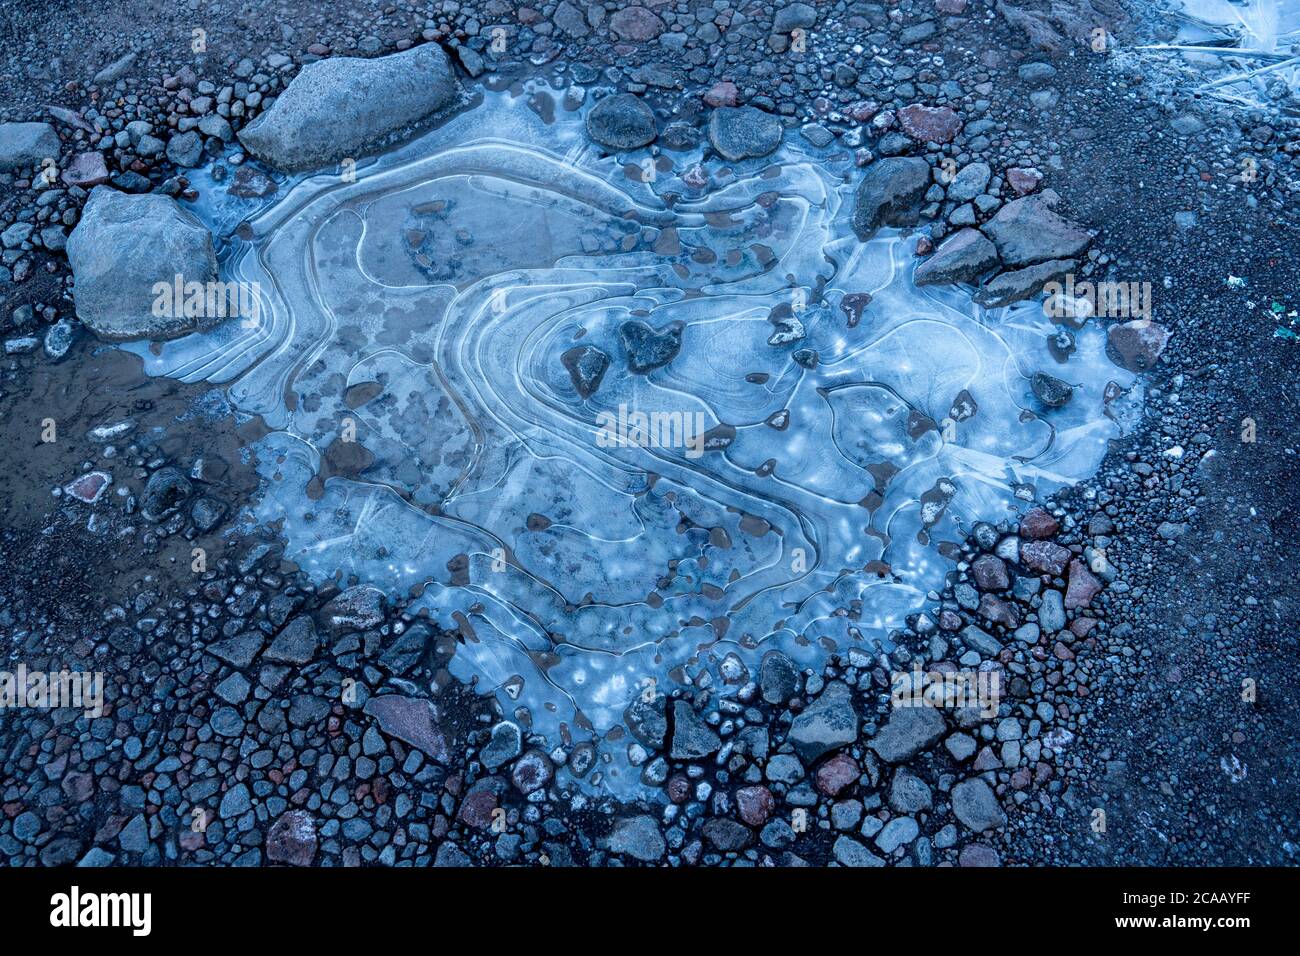 De l'eau dans une flaque gelée à des formes tourbillonnantes dans la glace. Fond de gravier et de cailloux. Banque D'Images